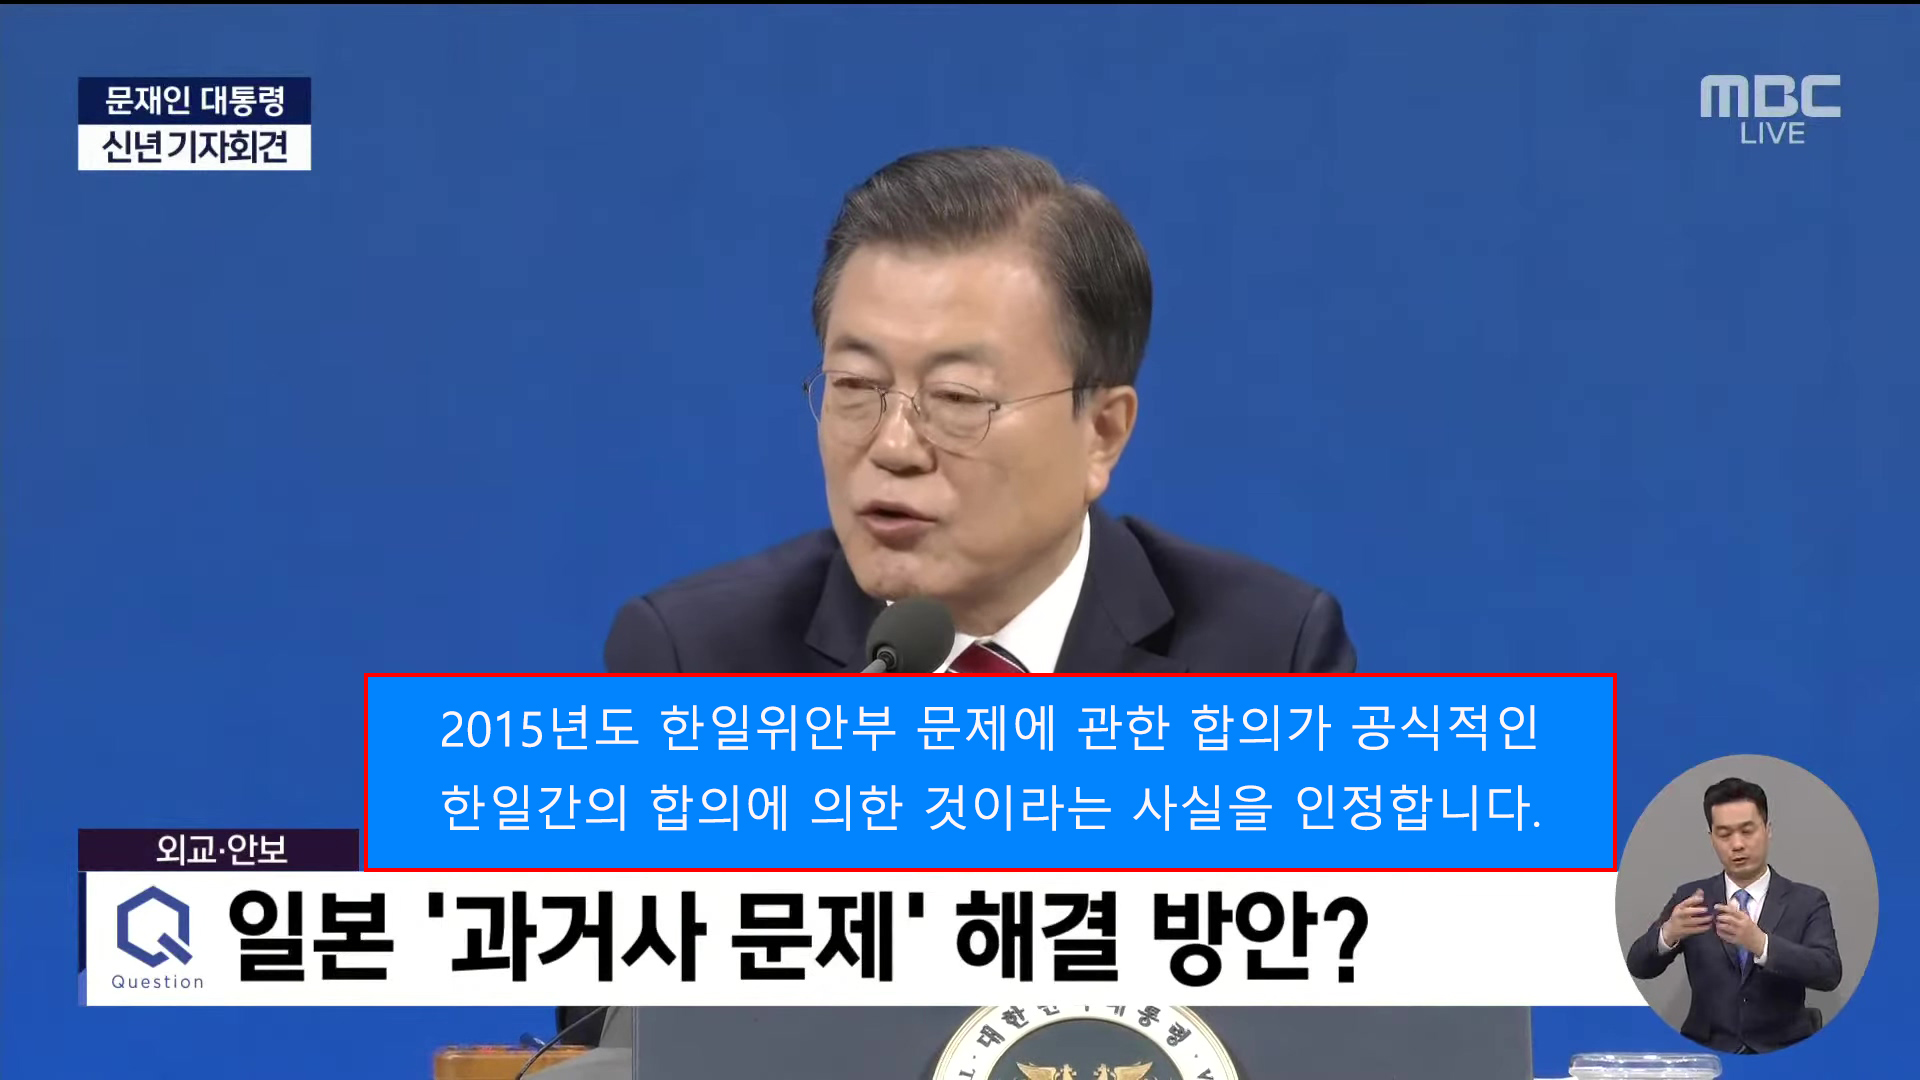 문재인 대통령 신년 기자회견 - [LIVE] MBC 뉴스특보 2021년 01월 18일.mkv_20210118_210552.jpg